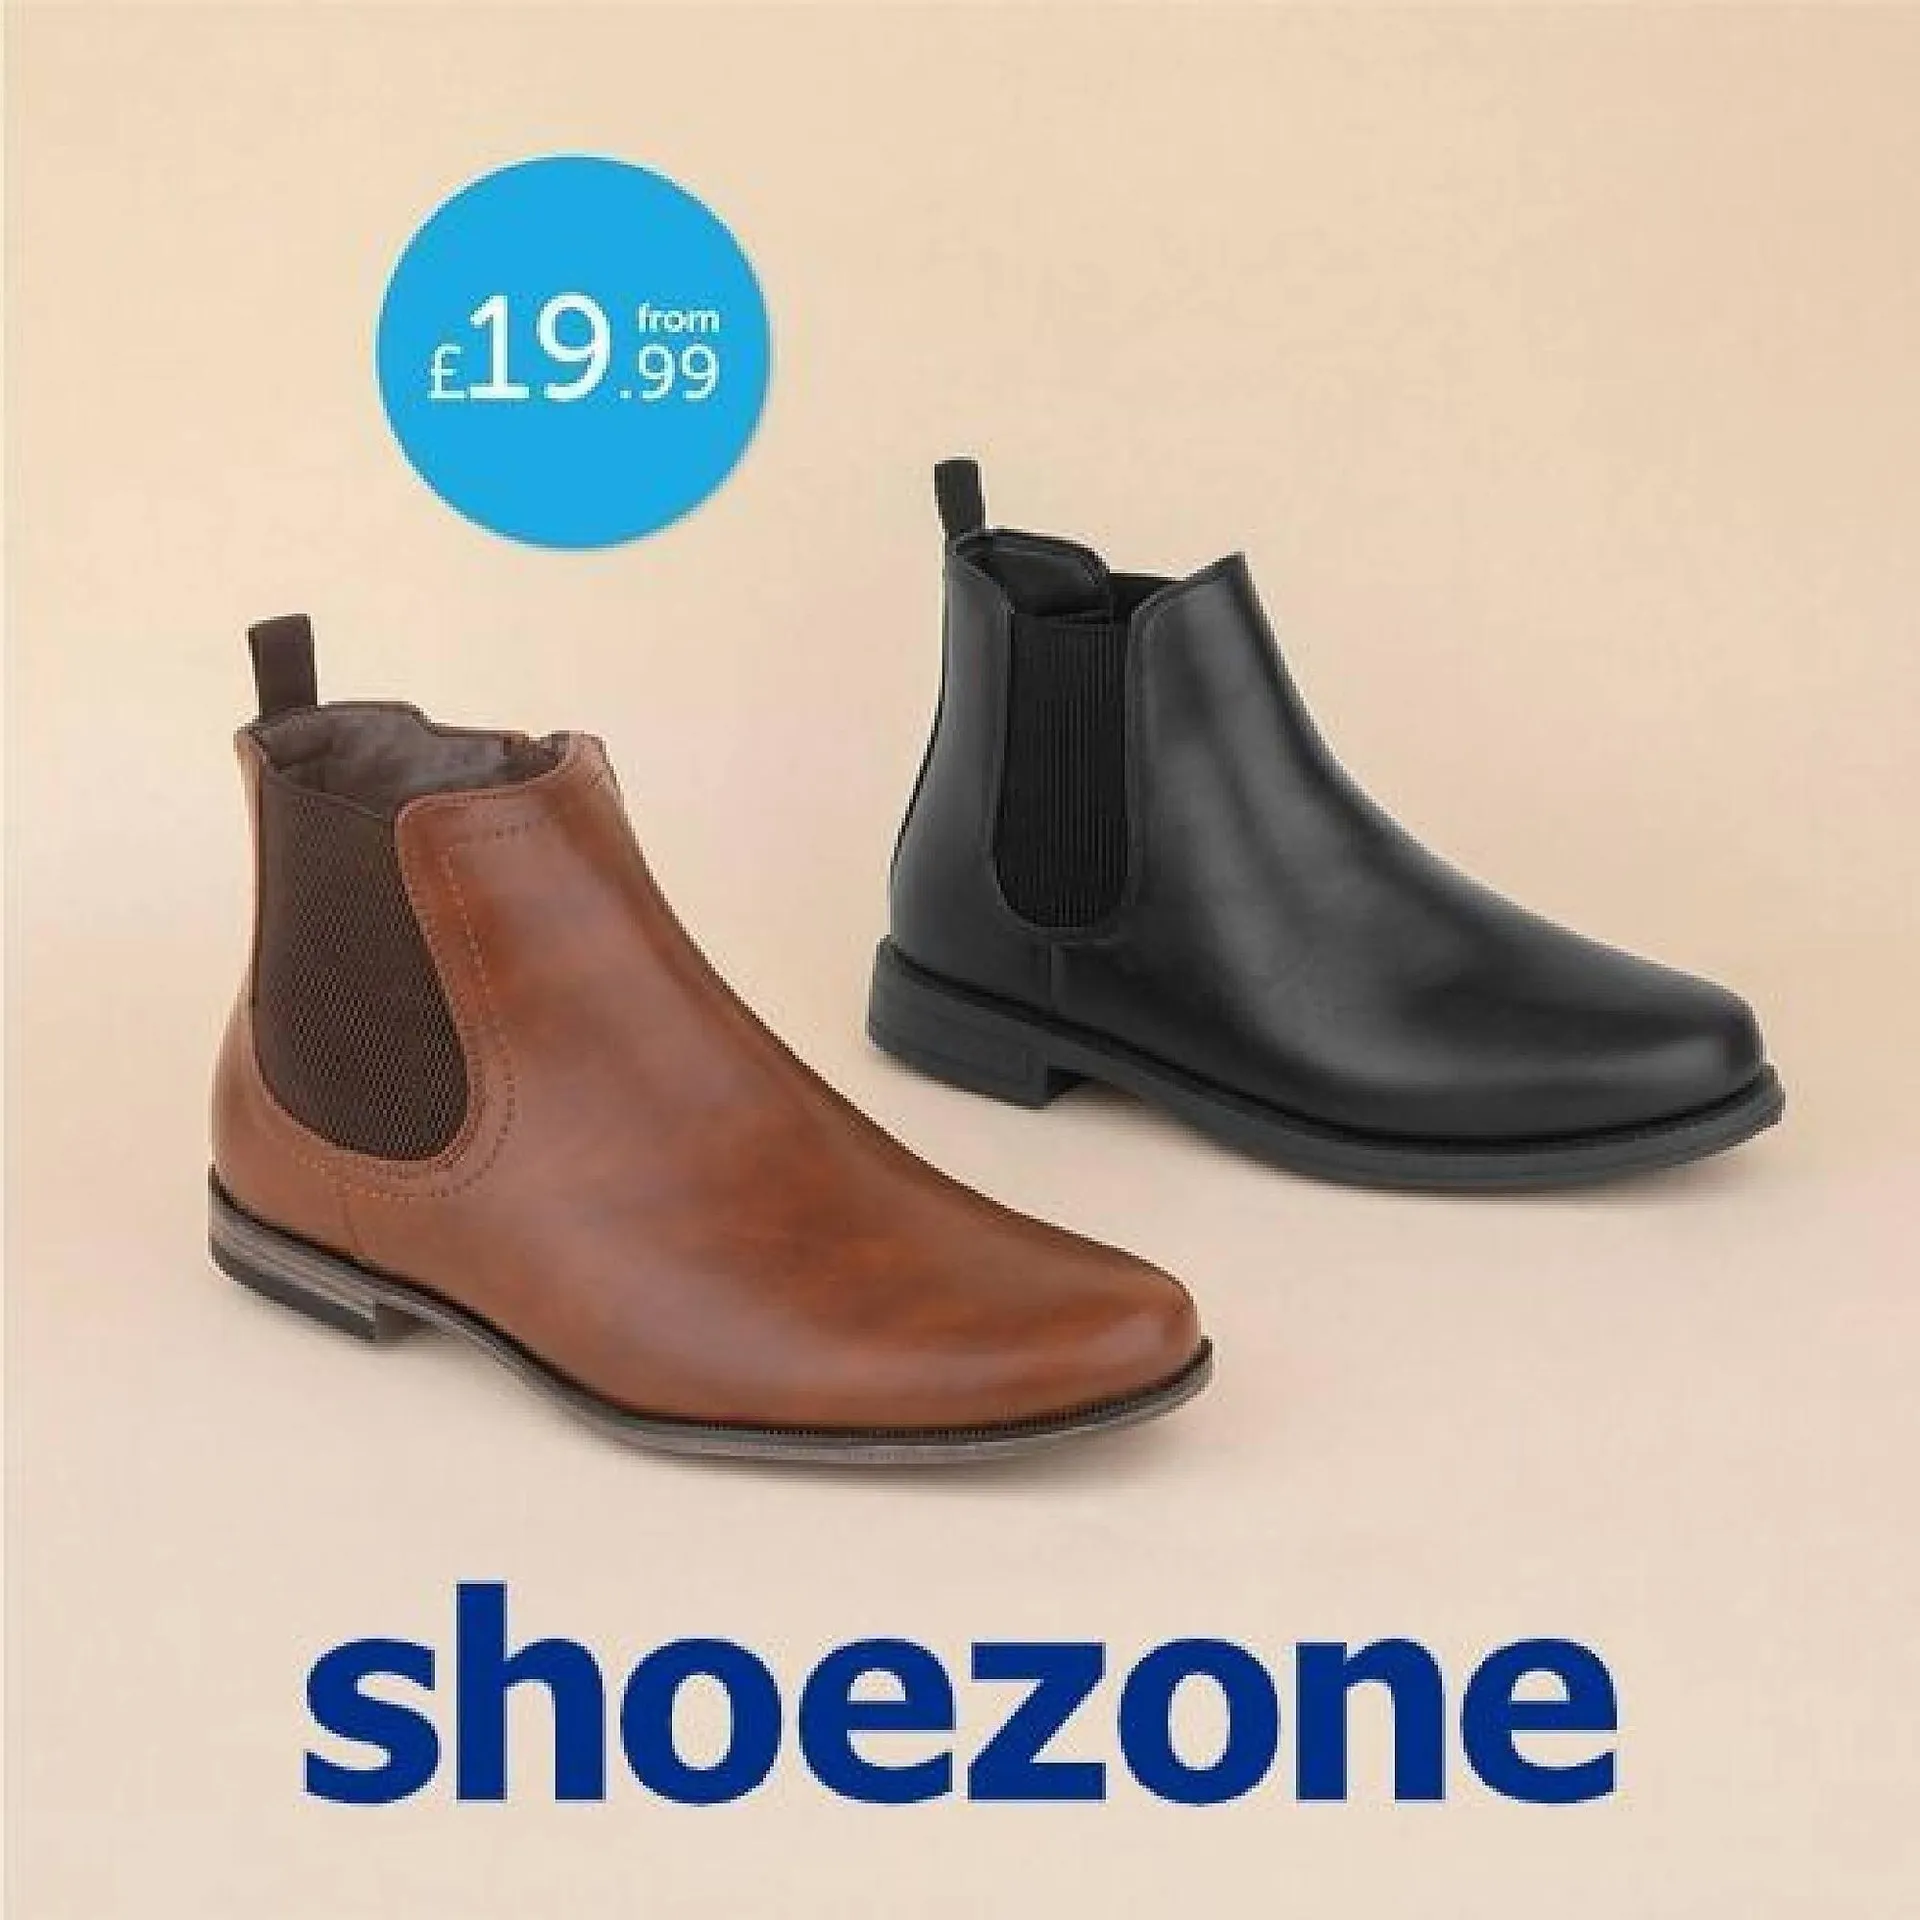 Shoe Zone leaflet